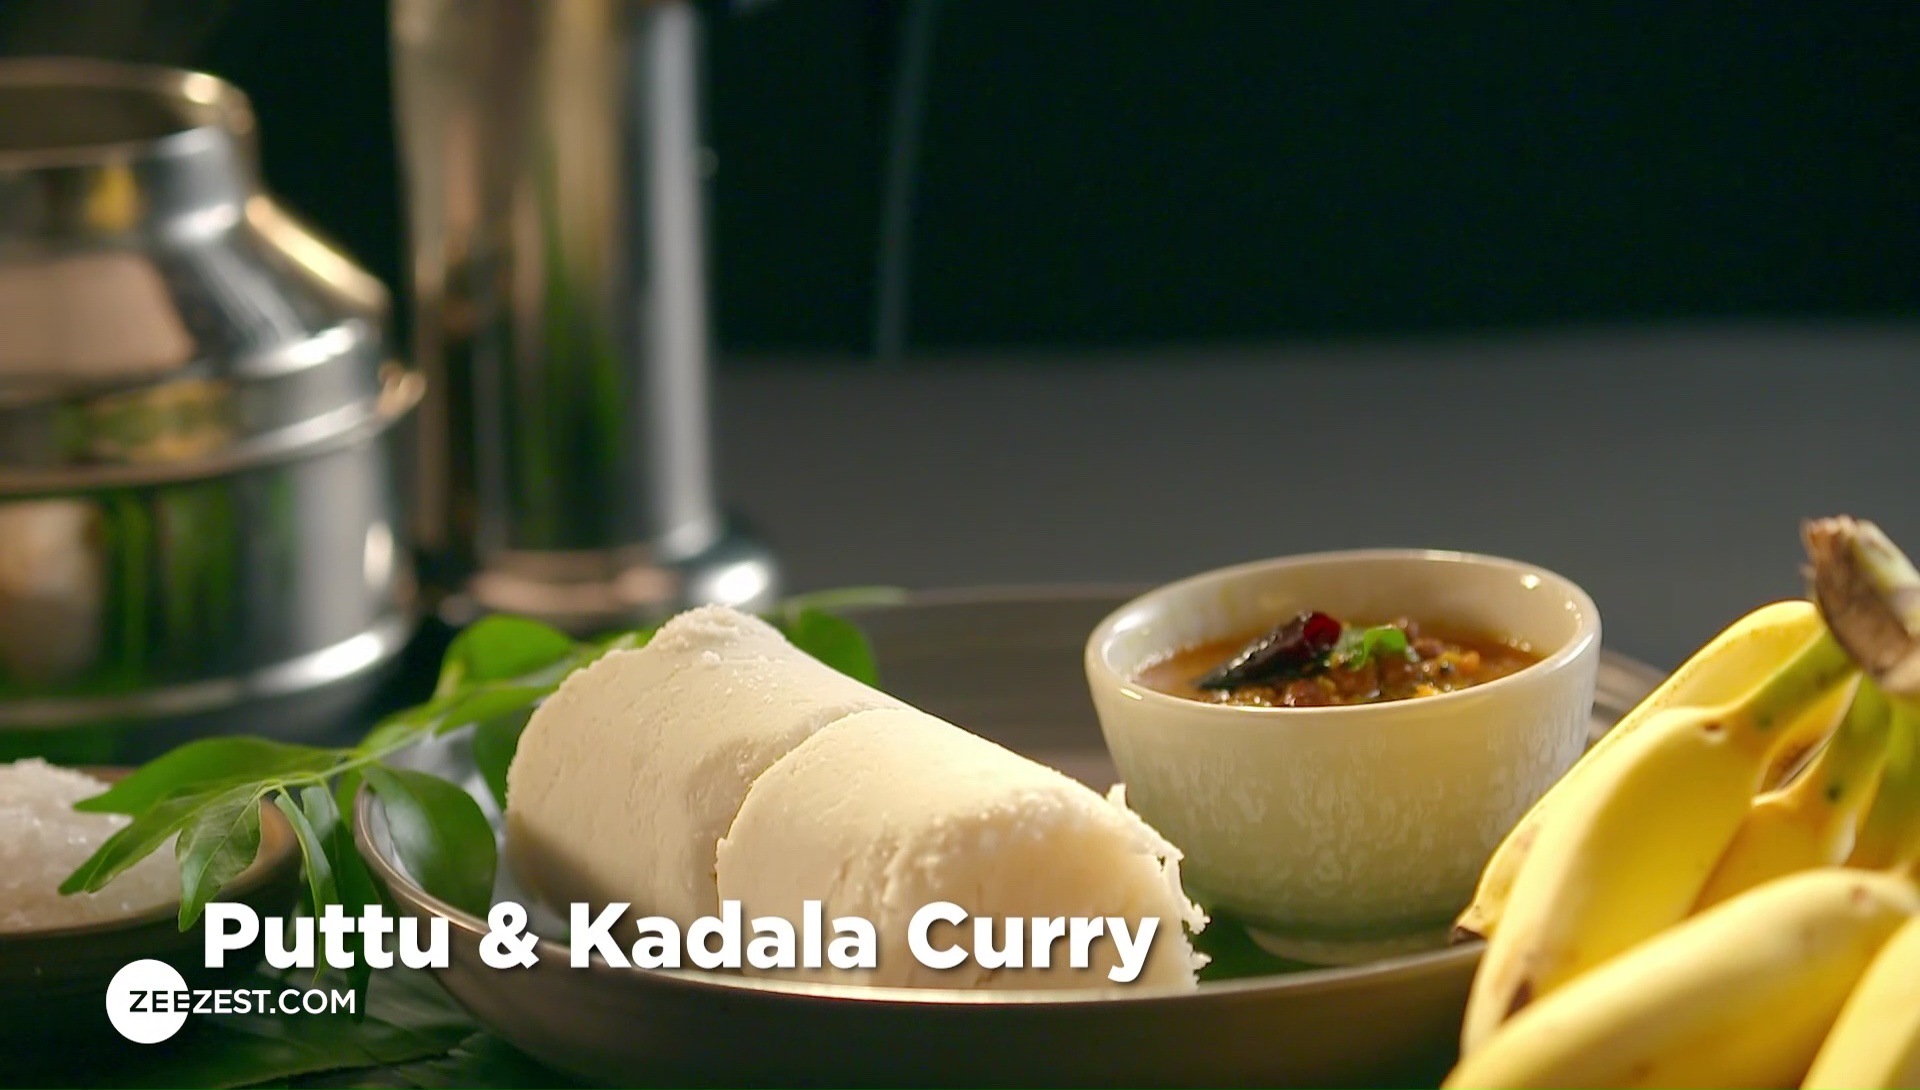 Puttu & Kadala curry